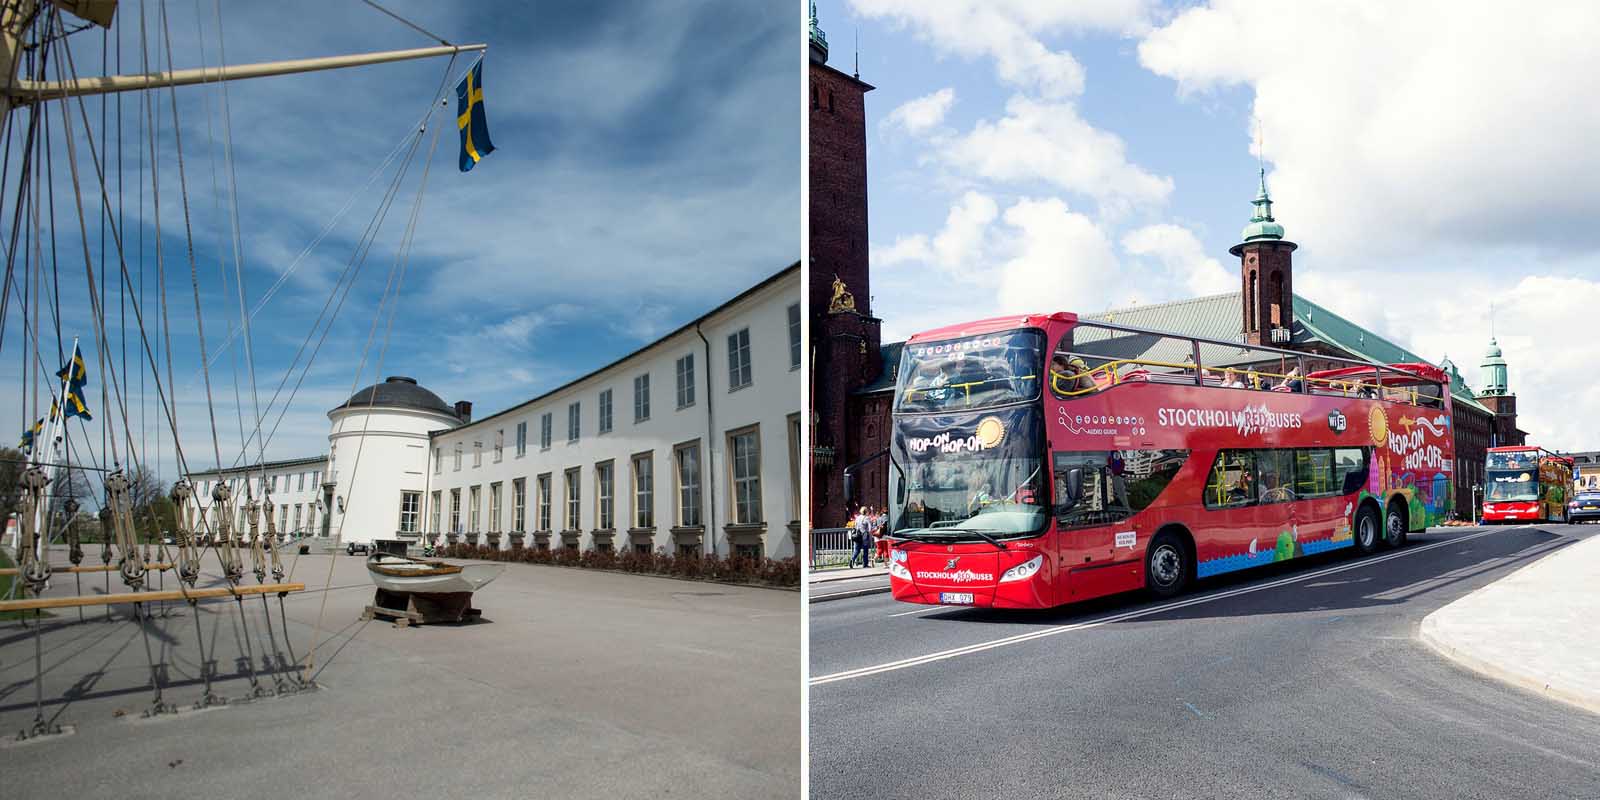 Stockholm Bus + Maritime Museum